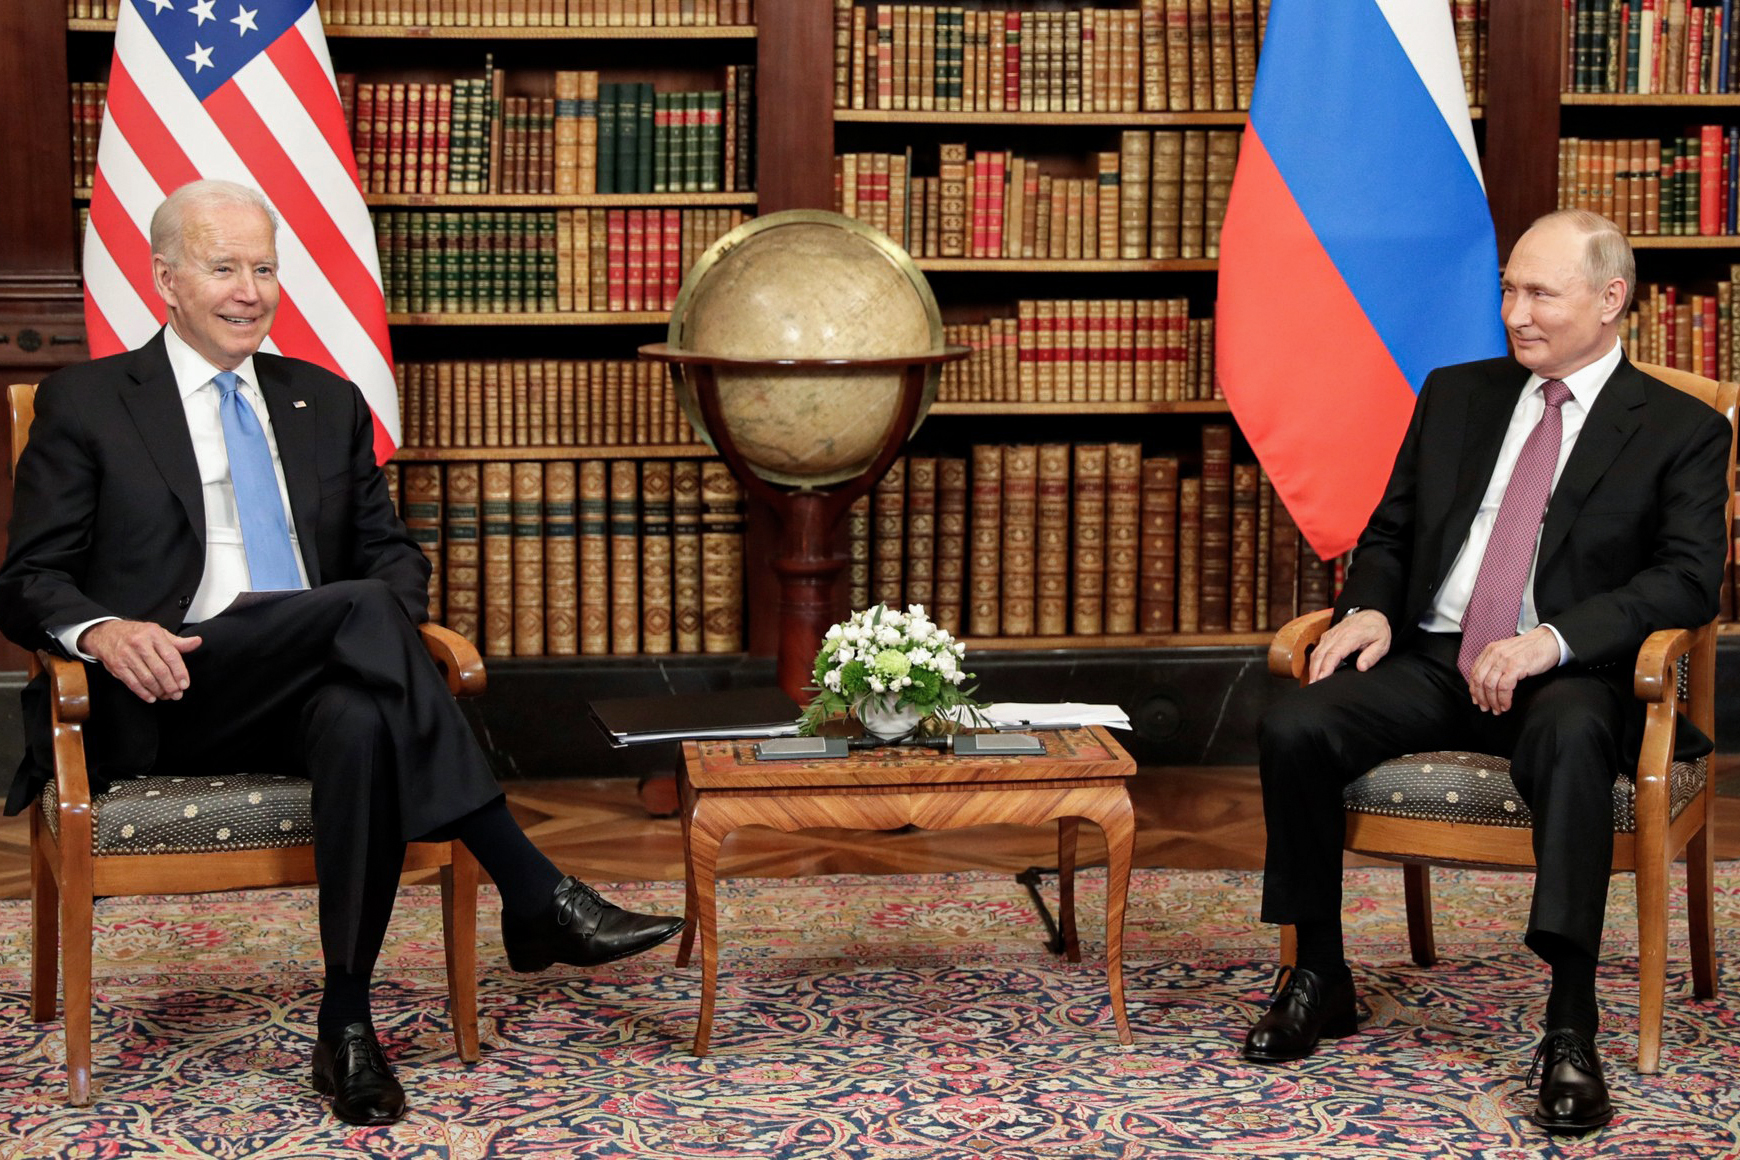 الاتصال بين البلدين تزامن مع احتدام الجدل حول دور روسيا (د ب أ)